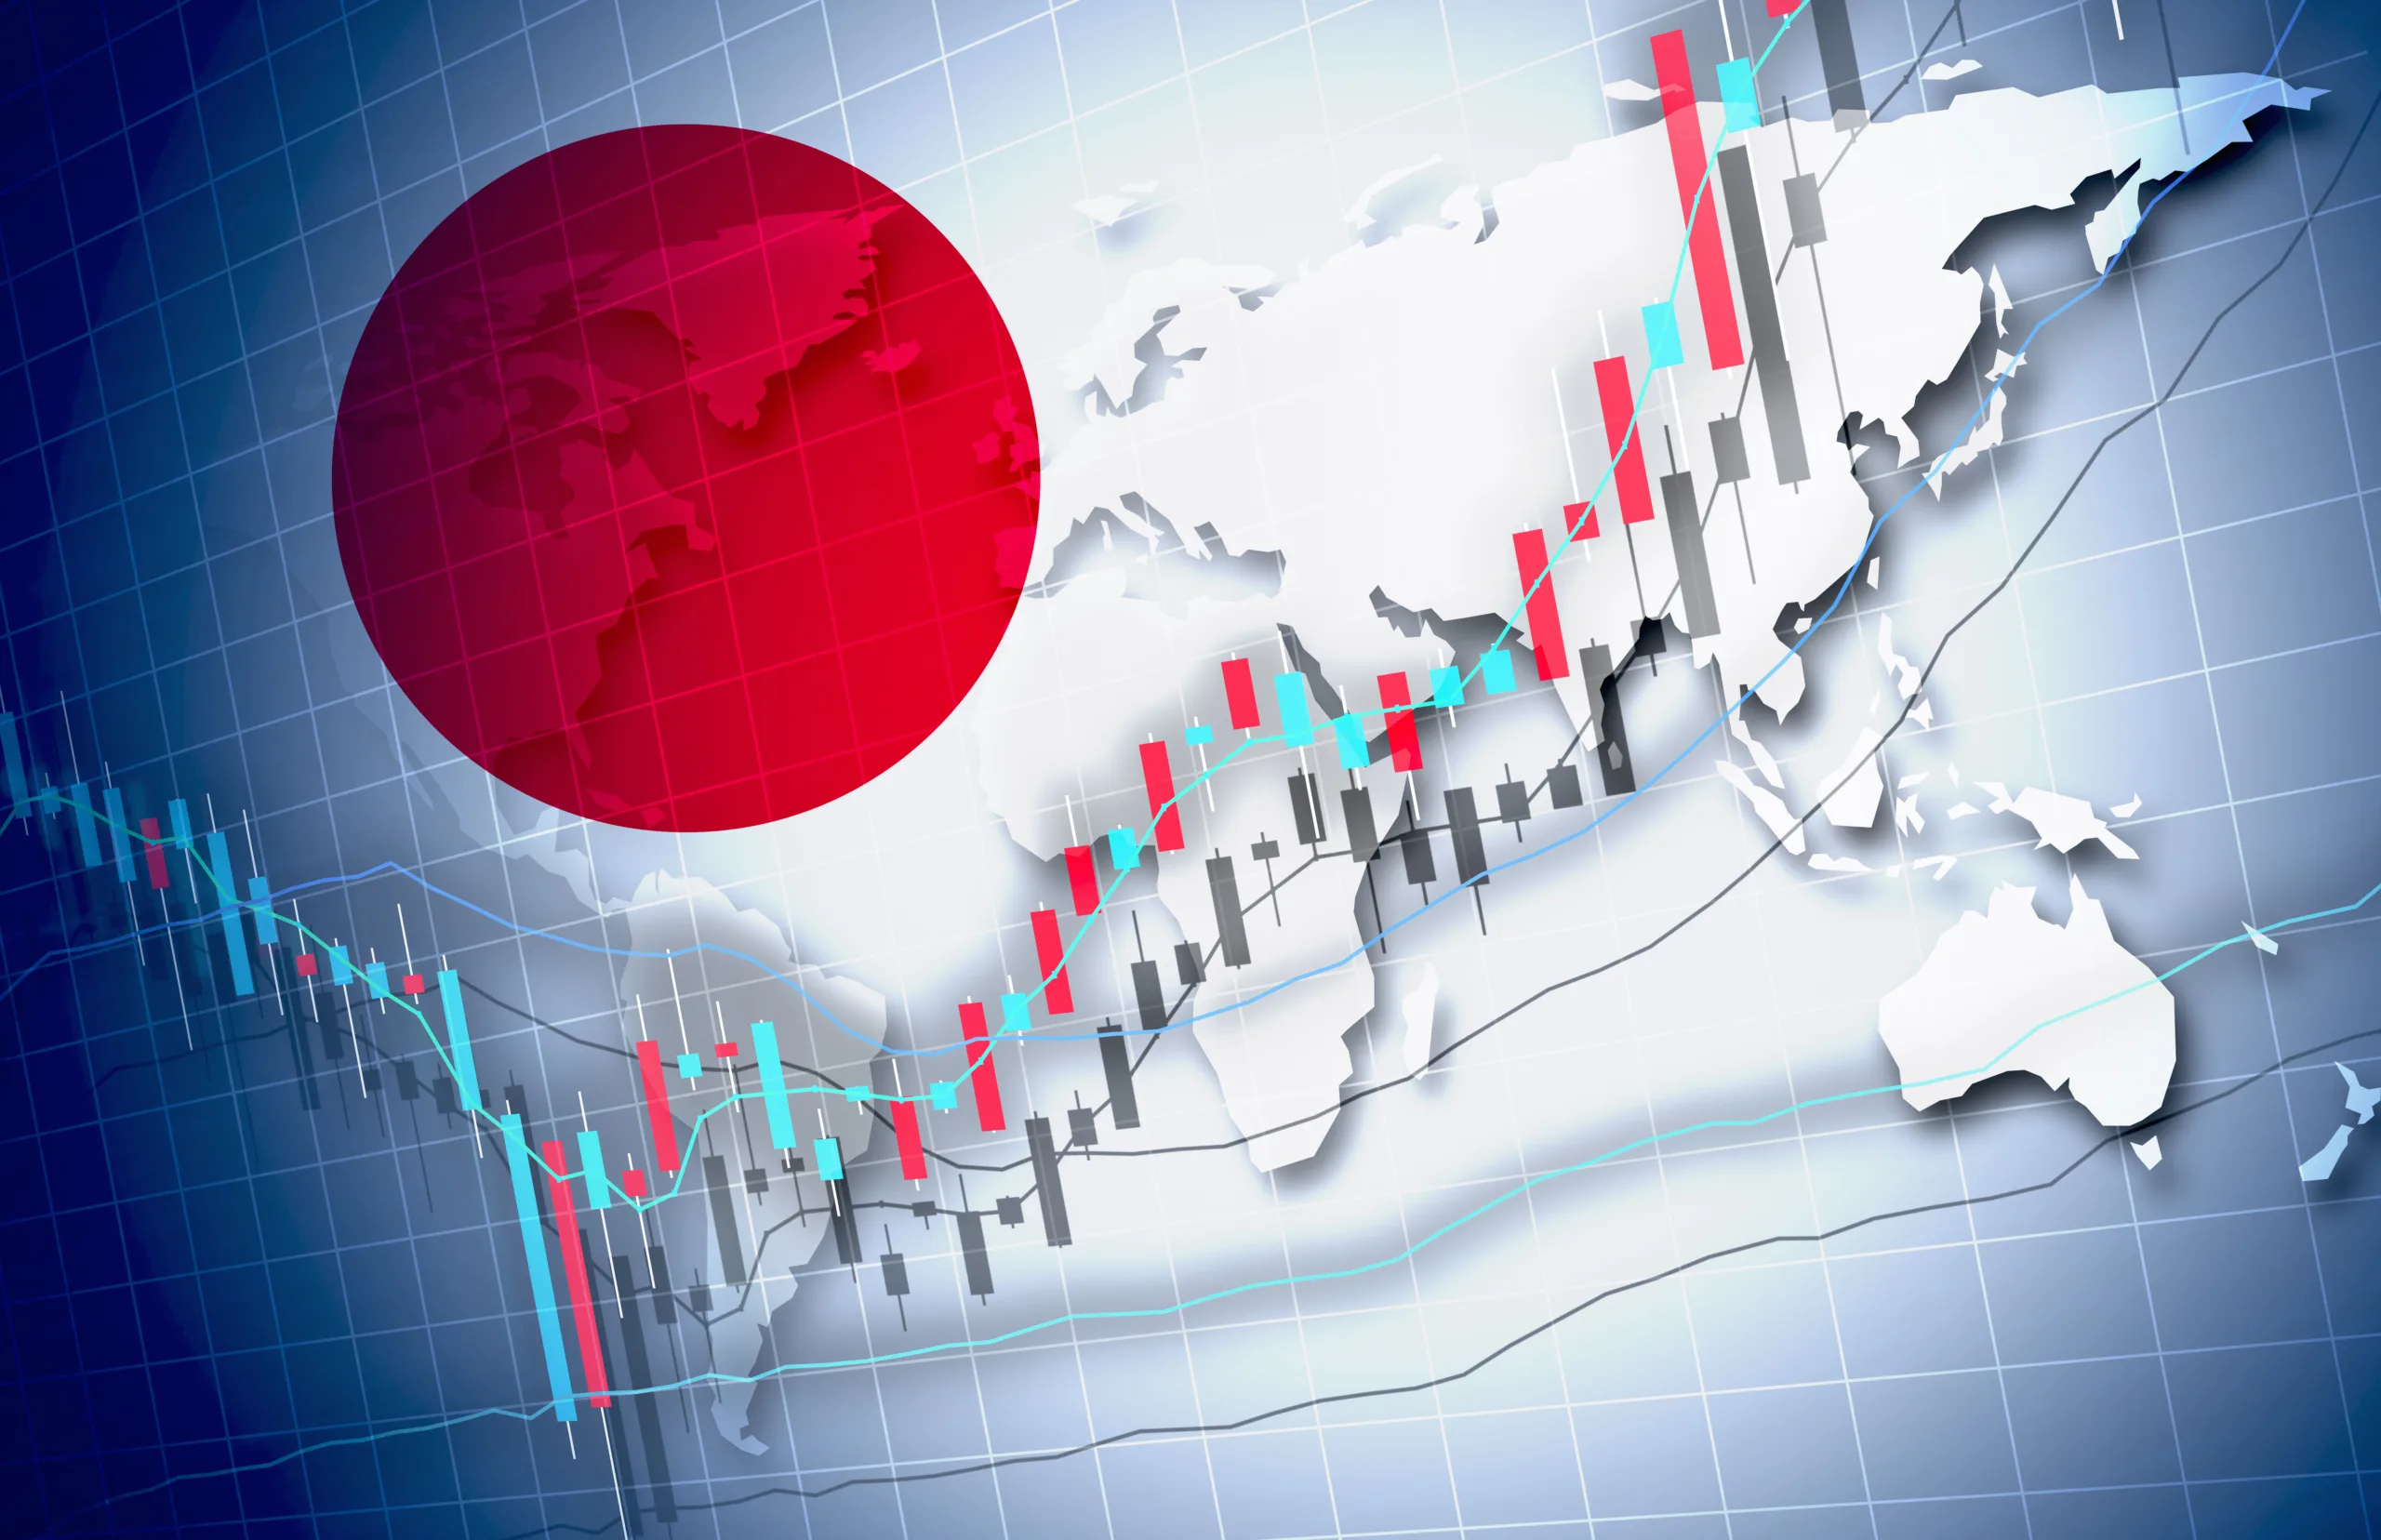 Bolsas da Ásia: Tóquio se salva impulsionado por balanço da Nvidia nos EUA enquanto mercados chineses derretem